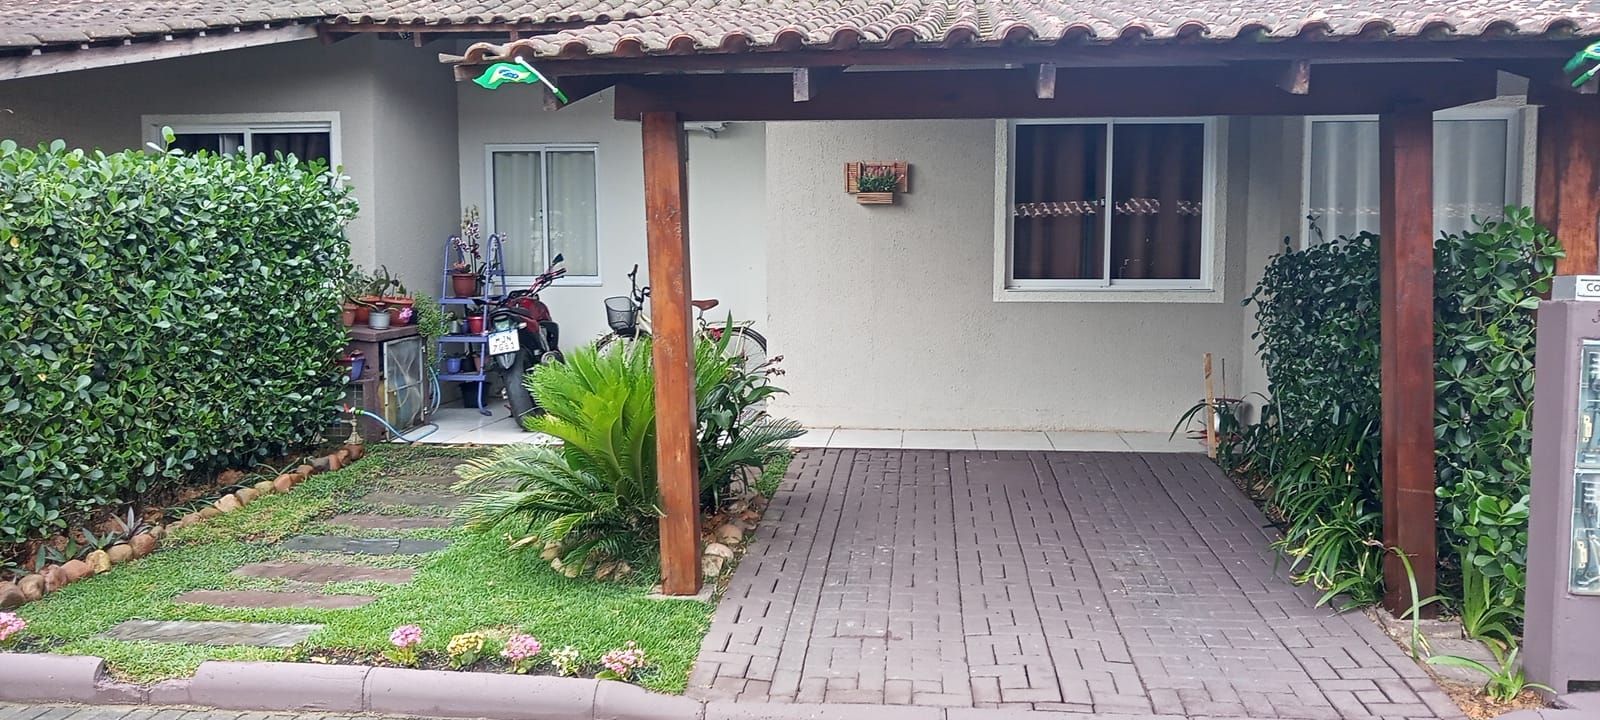 Casa  venda  no Beira Rio - Guaramirim, SC. Imveis